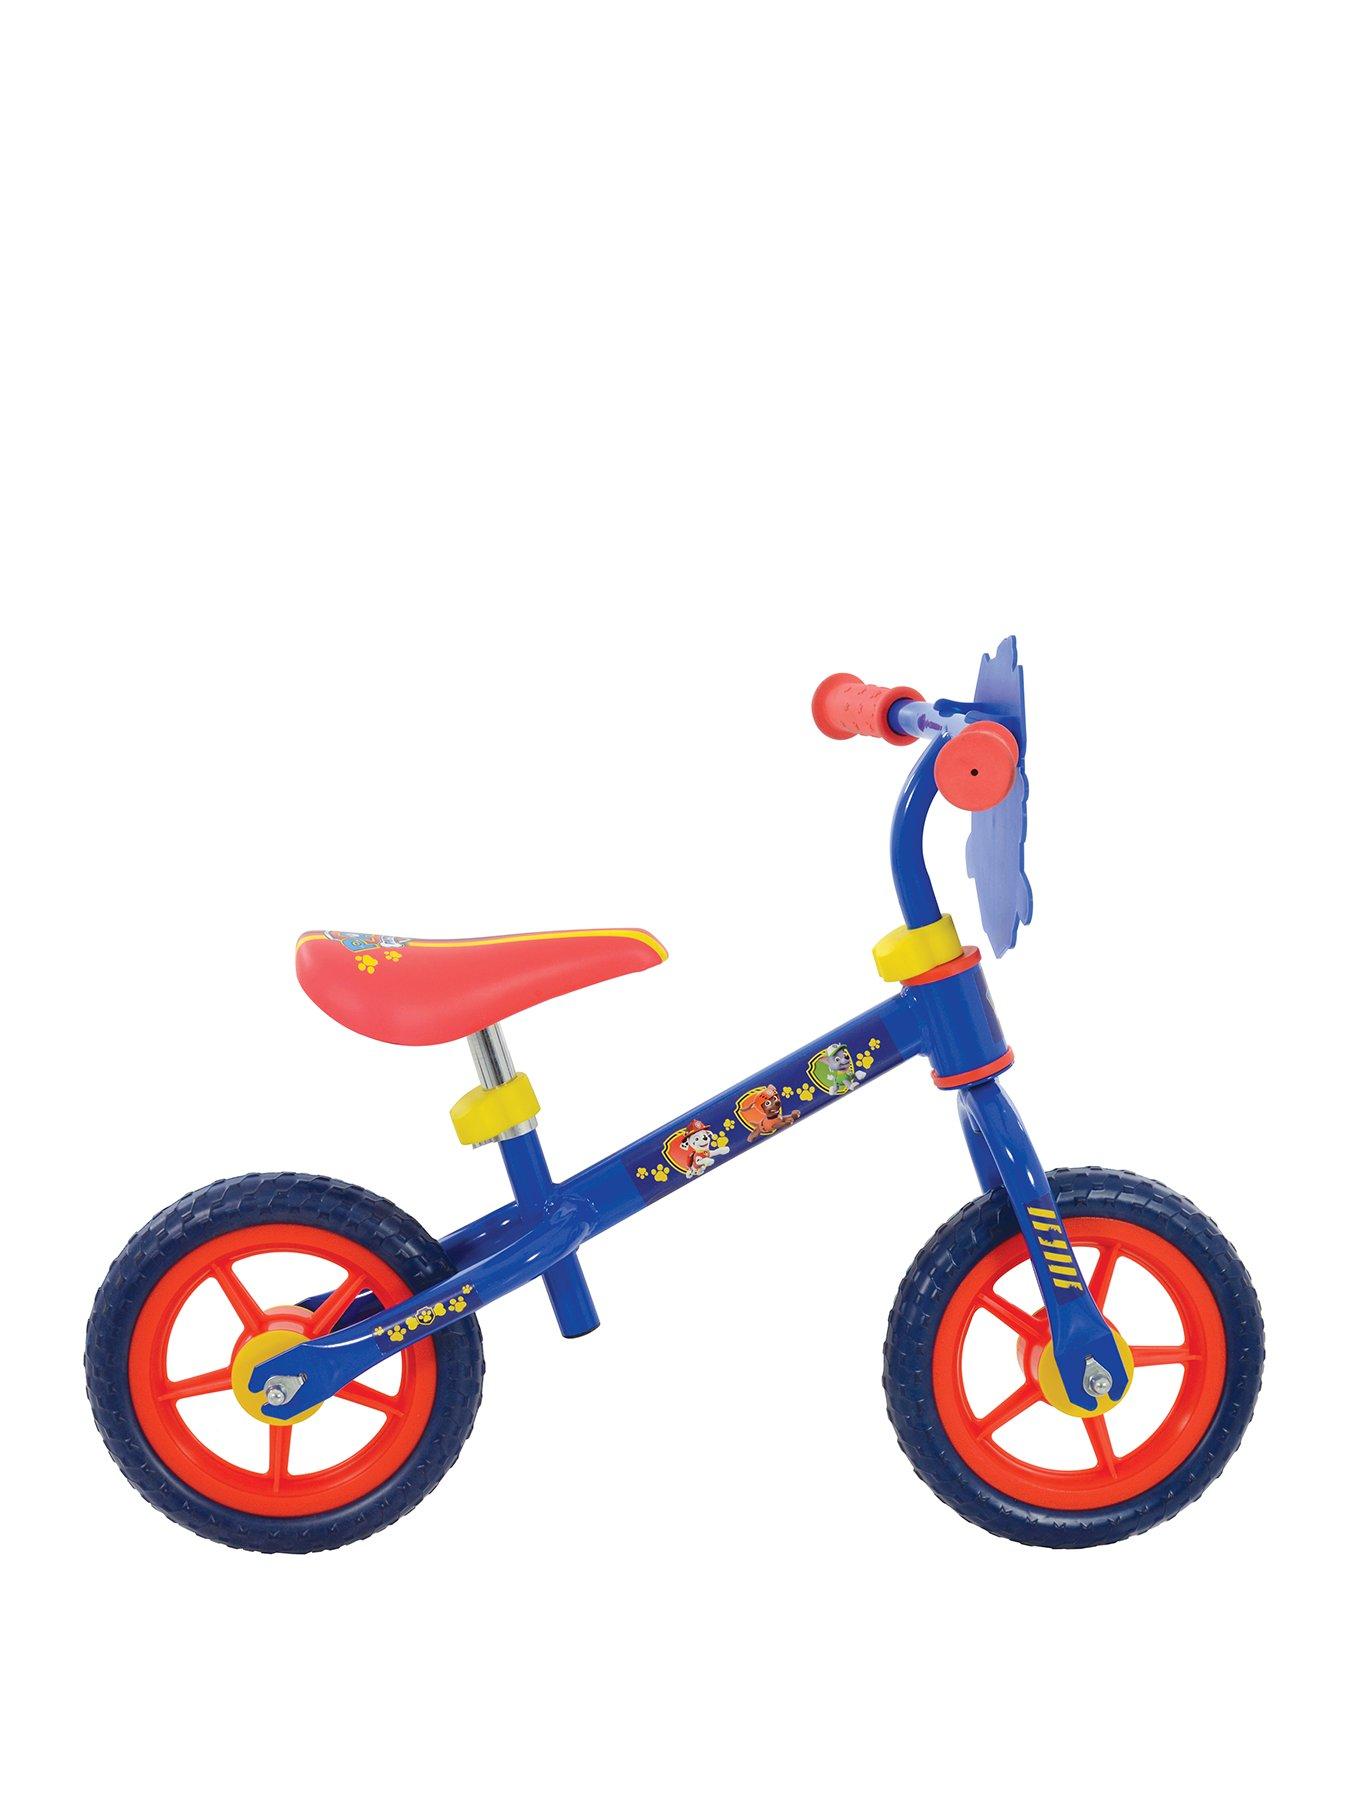 Childrens Bikes | Kids Bikes | Very.co.uk